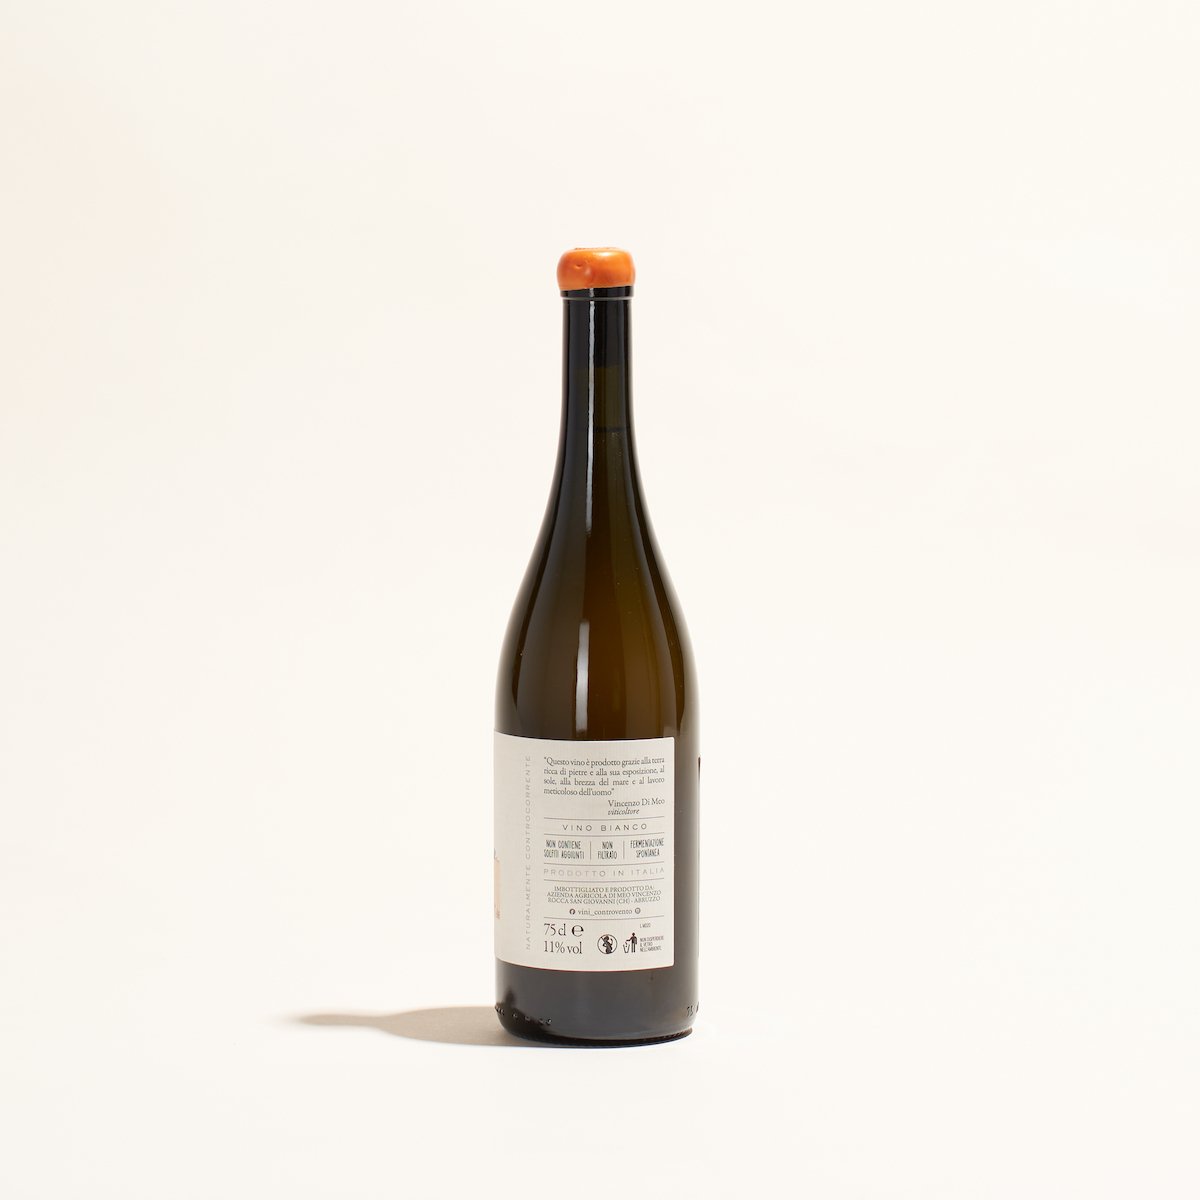 moby dick controvento natural orange wine abruzzo italy side